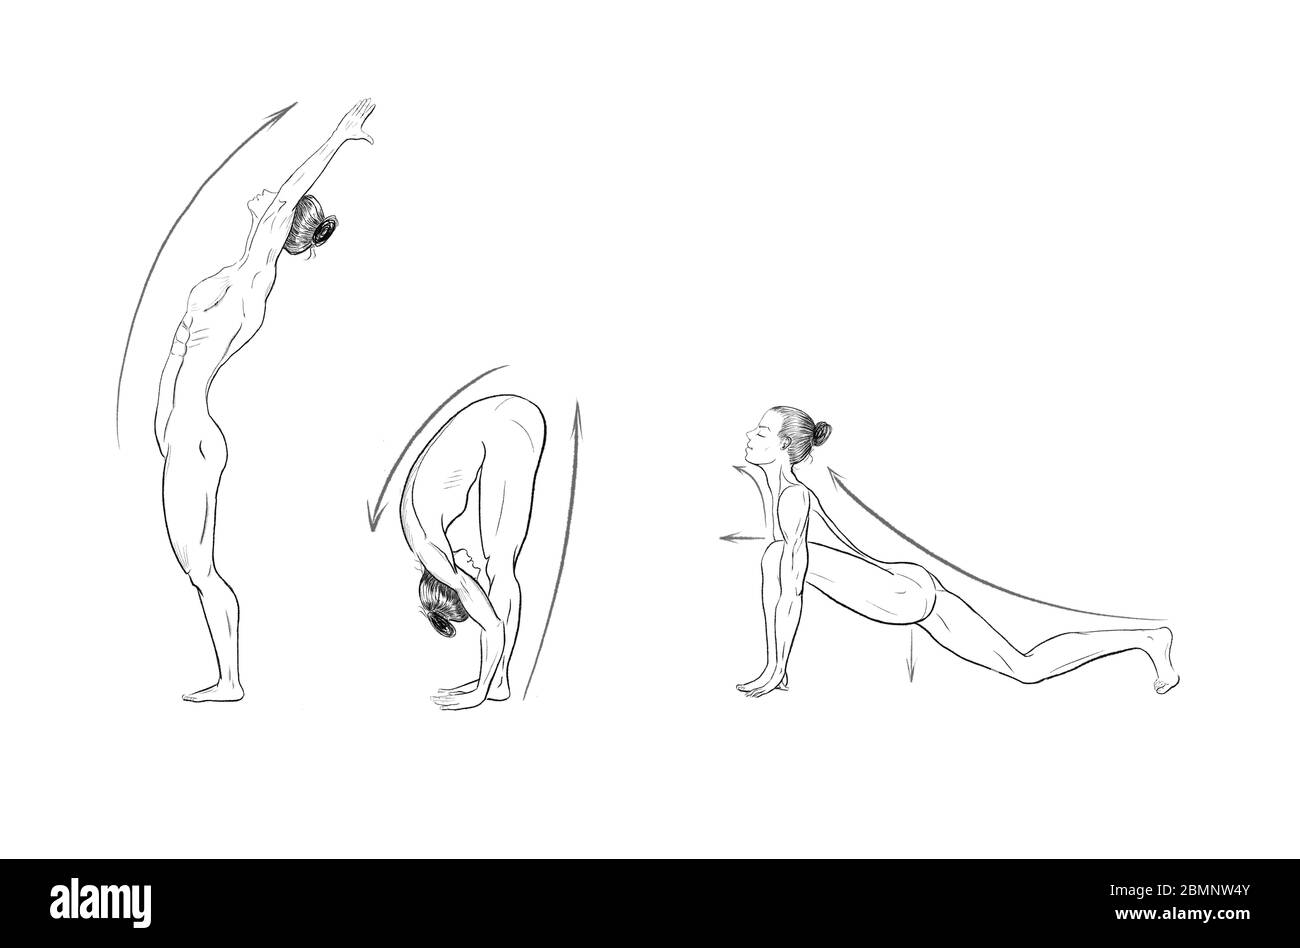 Illustration des poses de yoga (asanas) Banque D'Images